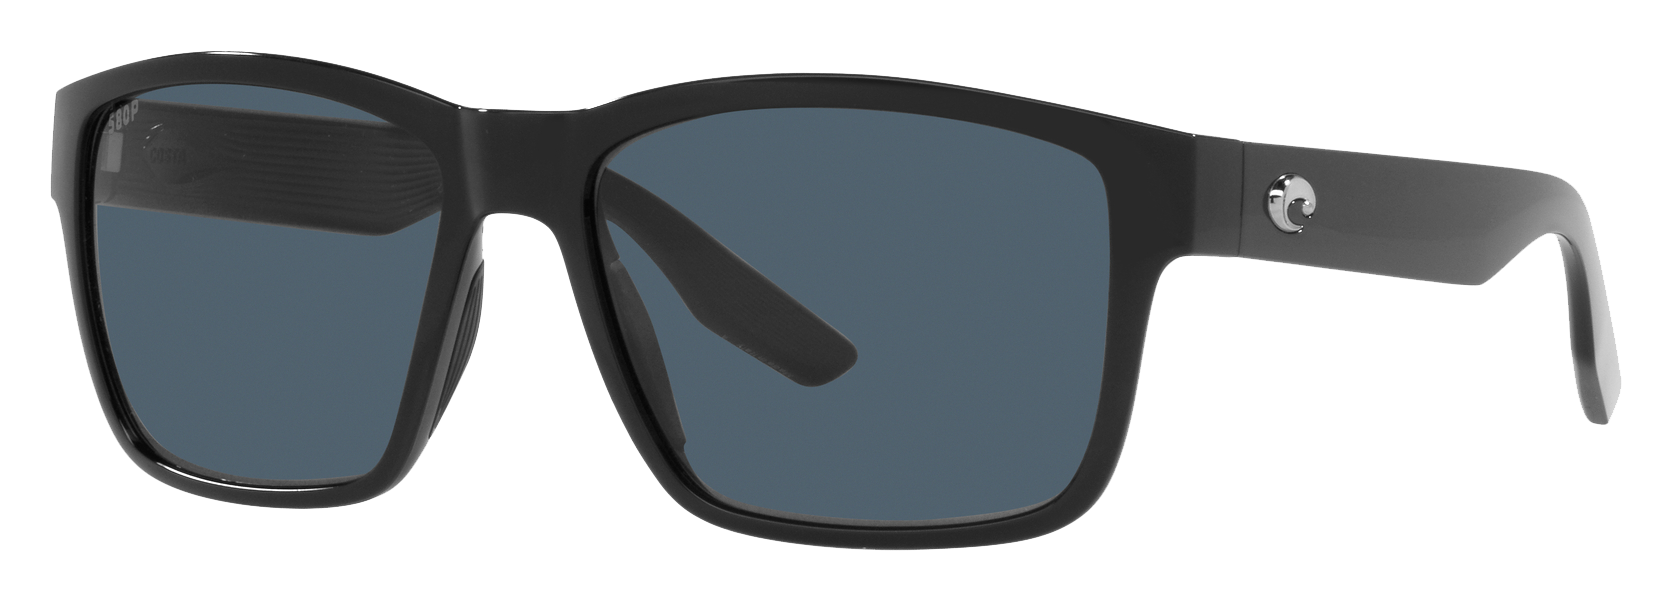 Costa Del Mar Paunch 580P Polarized Sunglasses - Gray/Black - Large